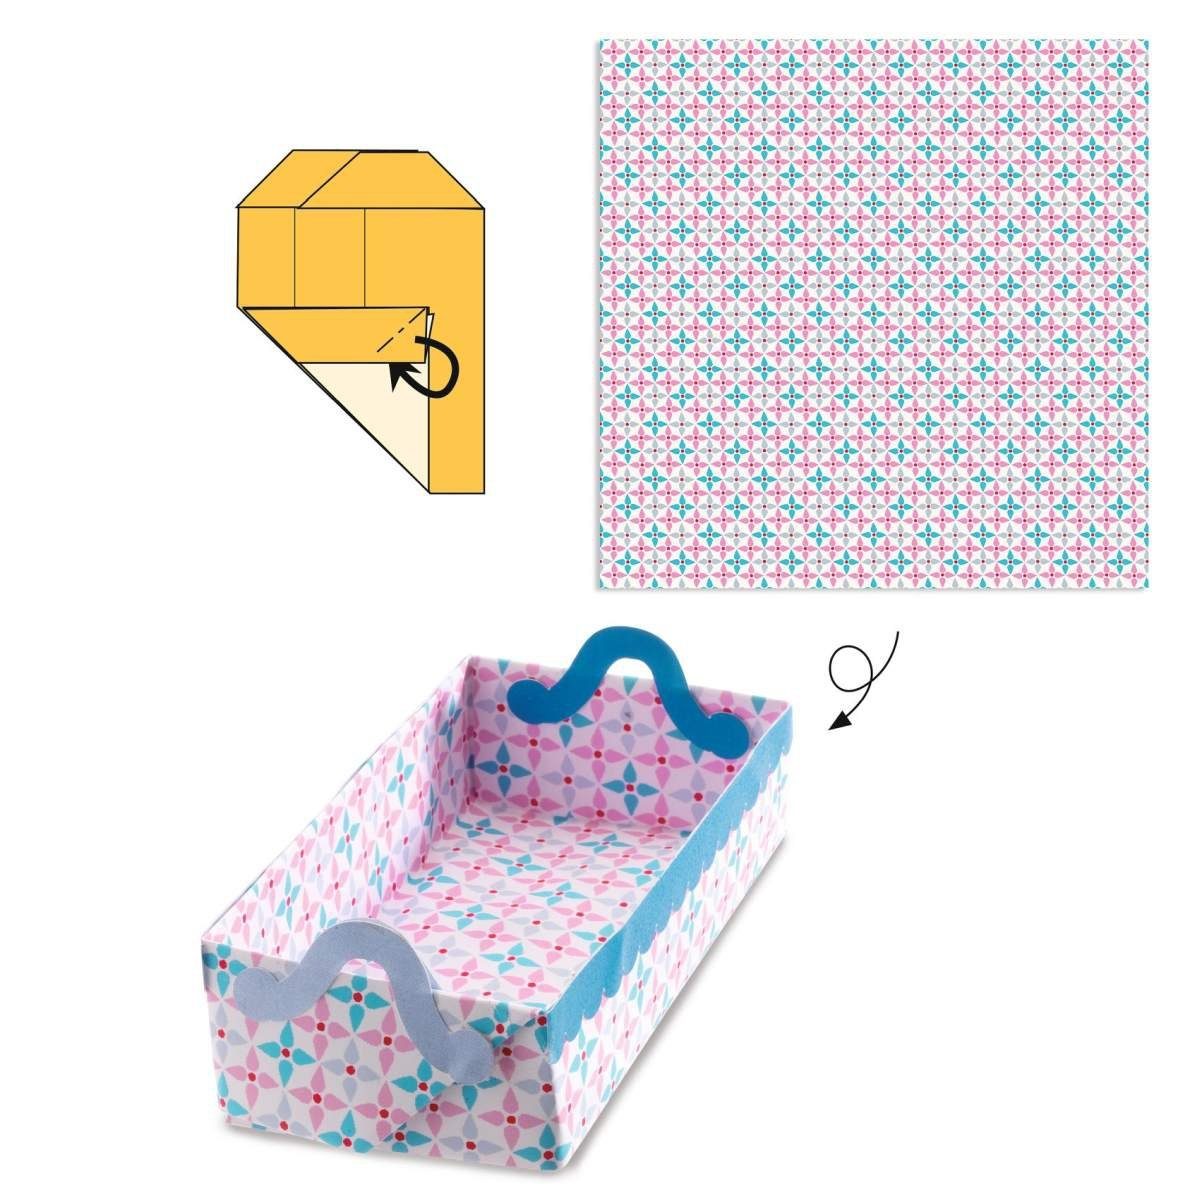 DJECO Kreativset Origami Kleine Origami-Bögen 105 24 Geschenkboxen Aufkleber